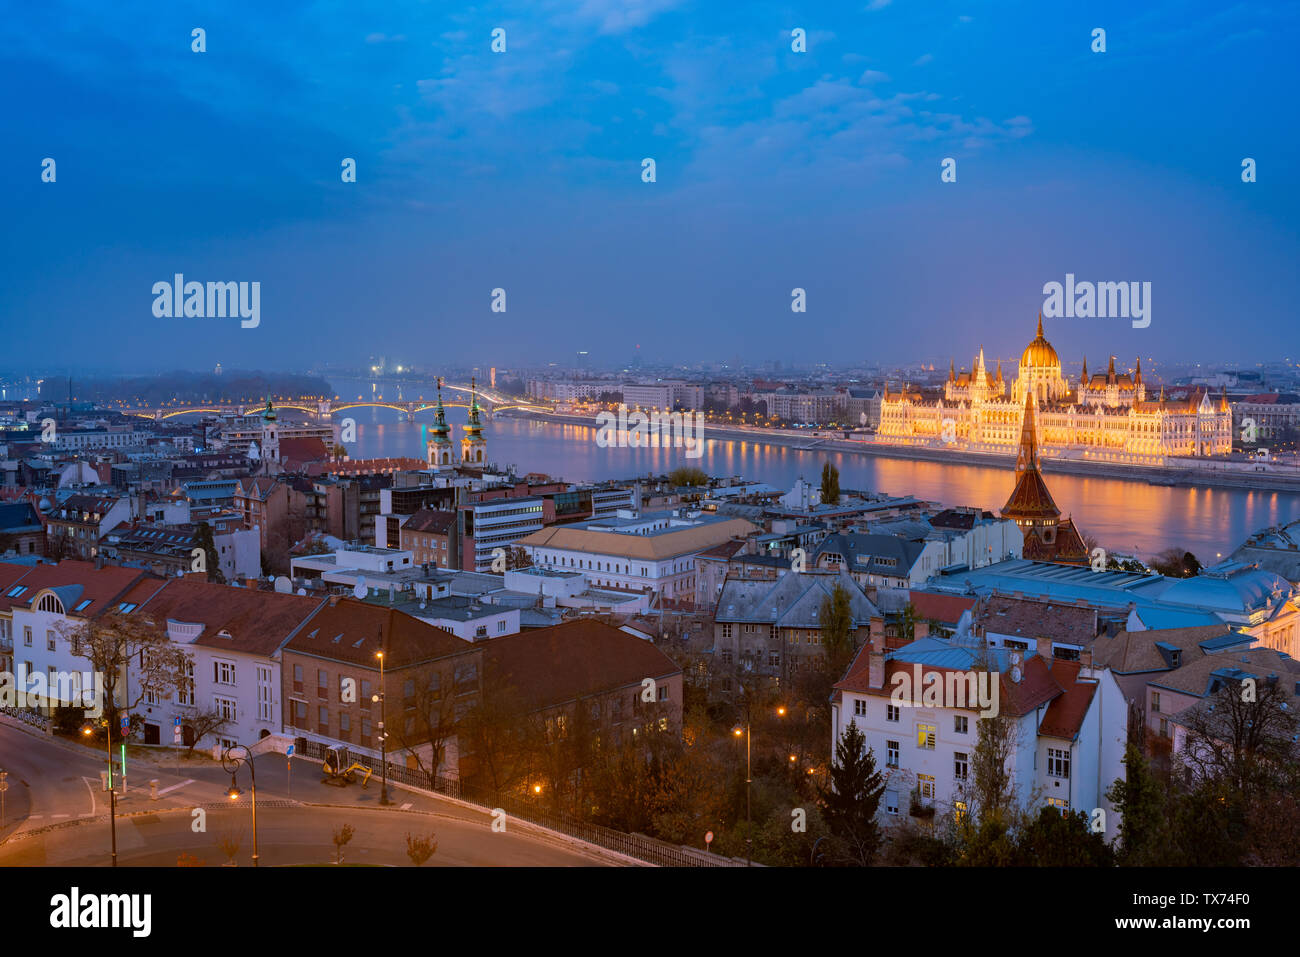 Nuit Vue aérienne de la ville de Budapest avec des capacités au parlement hongrois Hongrie Banque D'Images